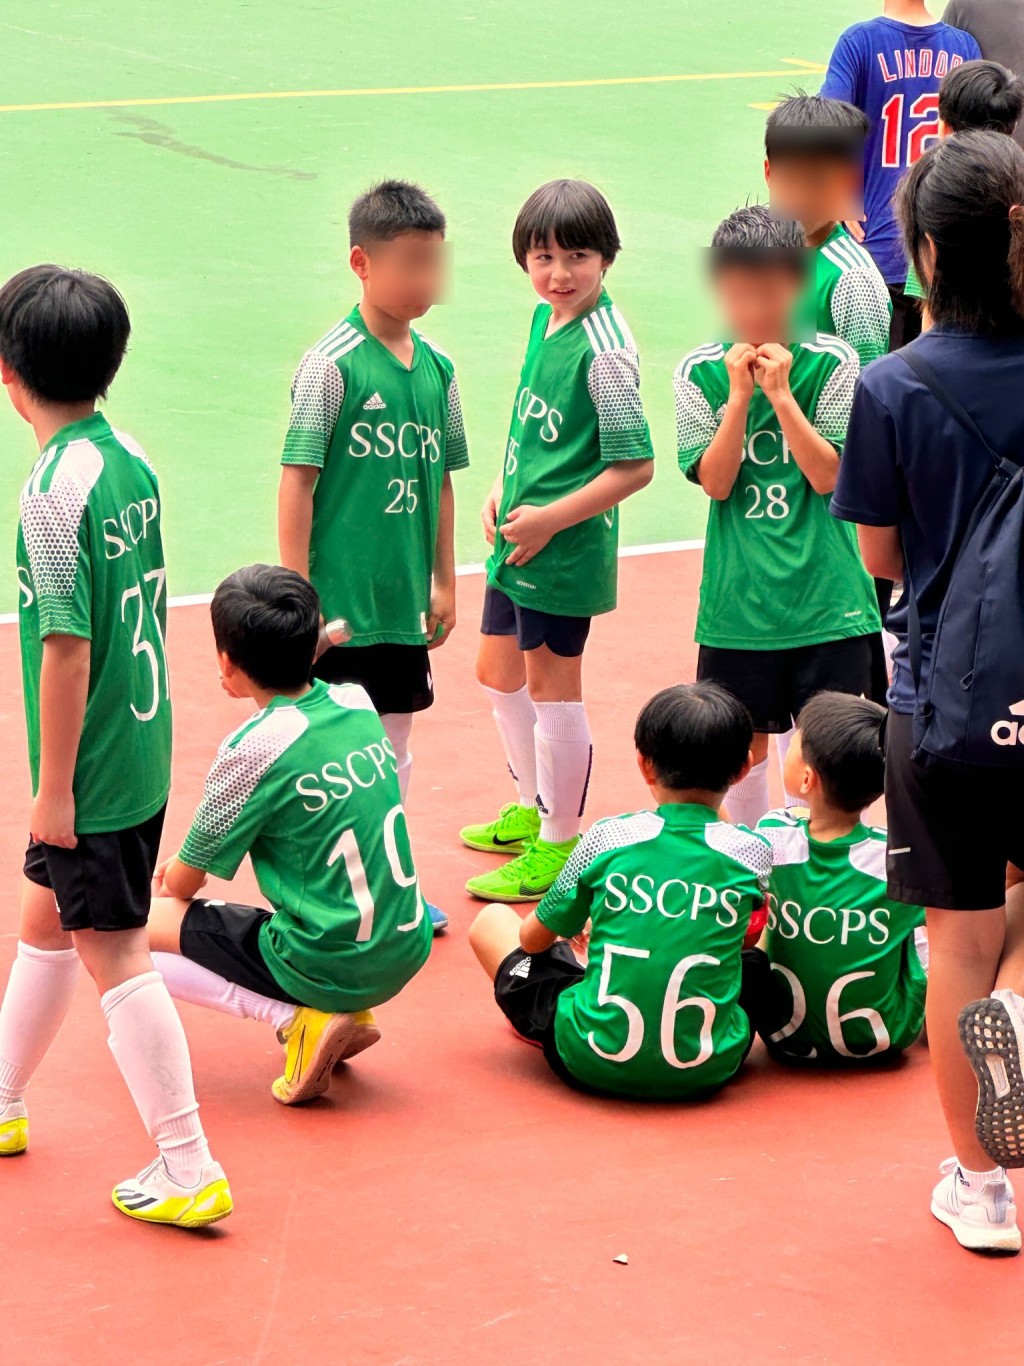 穿上SSCPS 35号绿色波衫的大仔雷棨宇，衬上黑色短裤、长波袜及萤光绿色鞋，犹如足球小将般。